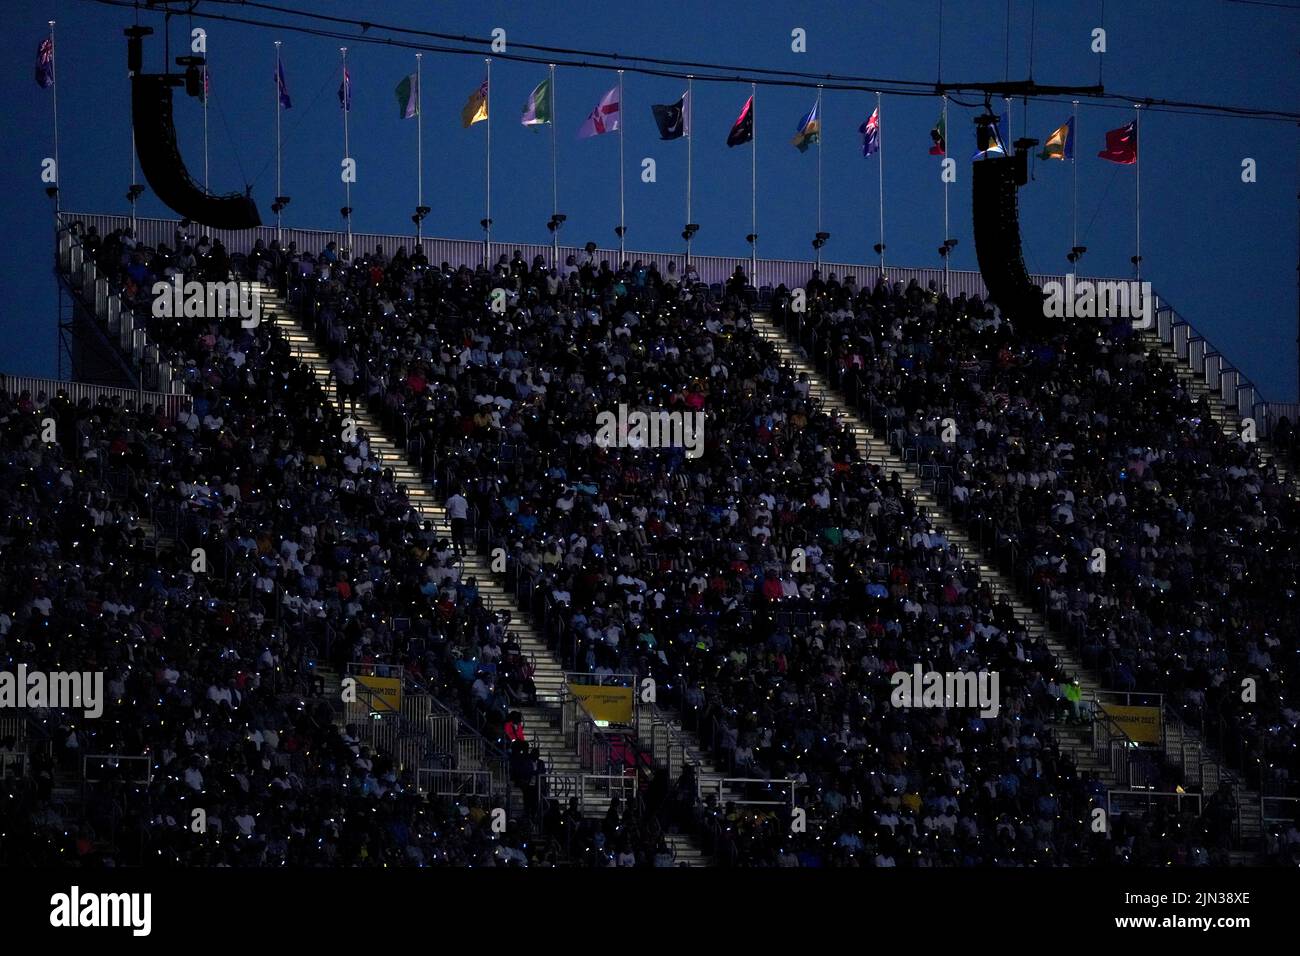 Una visión general de la multitud durante la Ceremonia de Clausura de los Juegos de la Commonwealth de 2022 en el Alexander Stadium de Birmingham. Fecha de la foto: Lunes 8 de agosto de 2022. Foto de stock